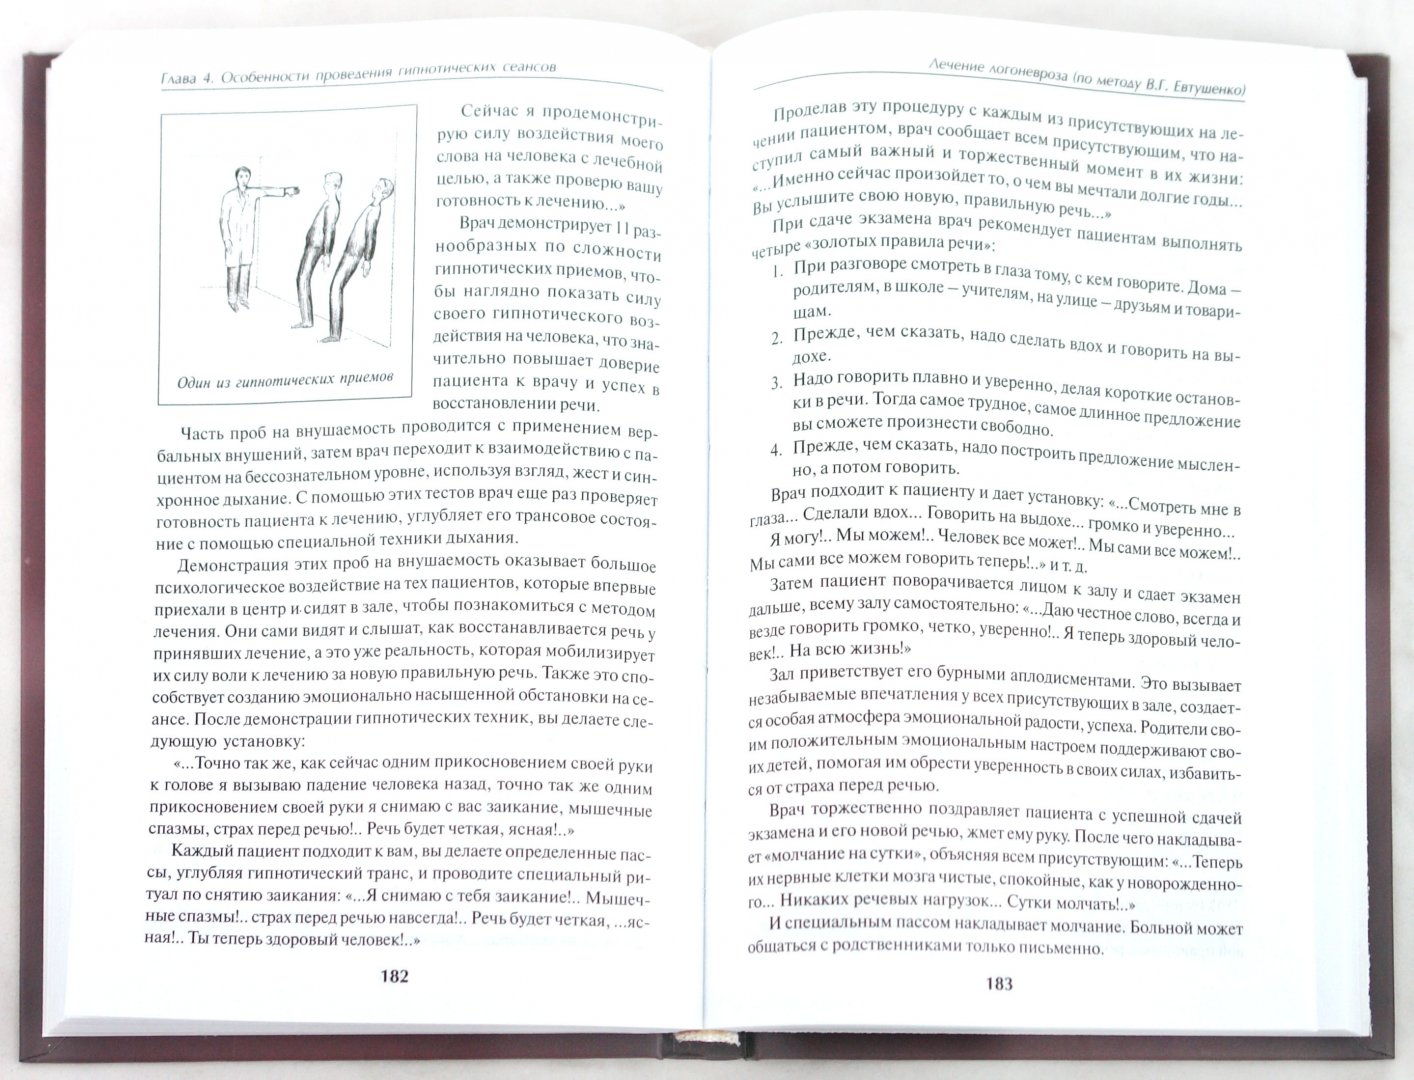 Иллюстрация 1 из 16 для Методы современной гипнотерапии - Виталий Евтушенко | Лабиринт - книги. Источник: Лабиринт